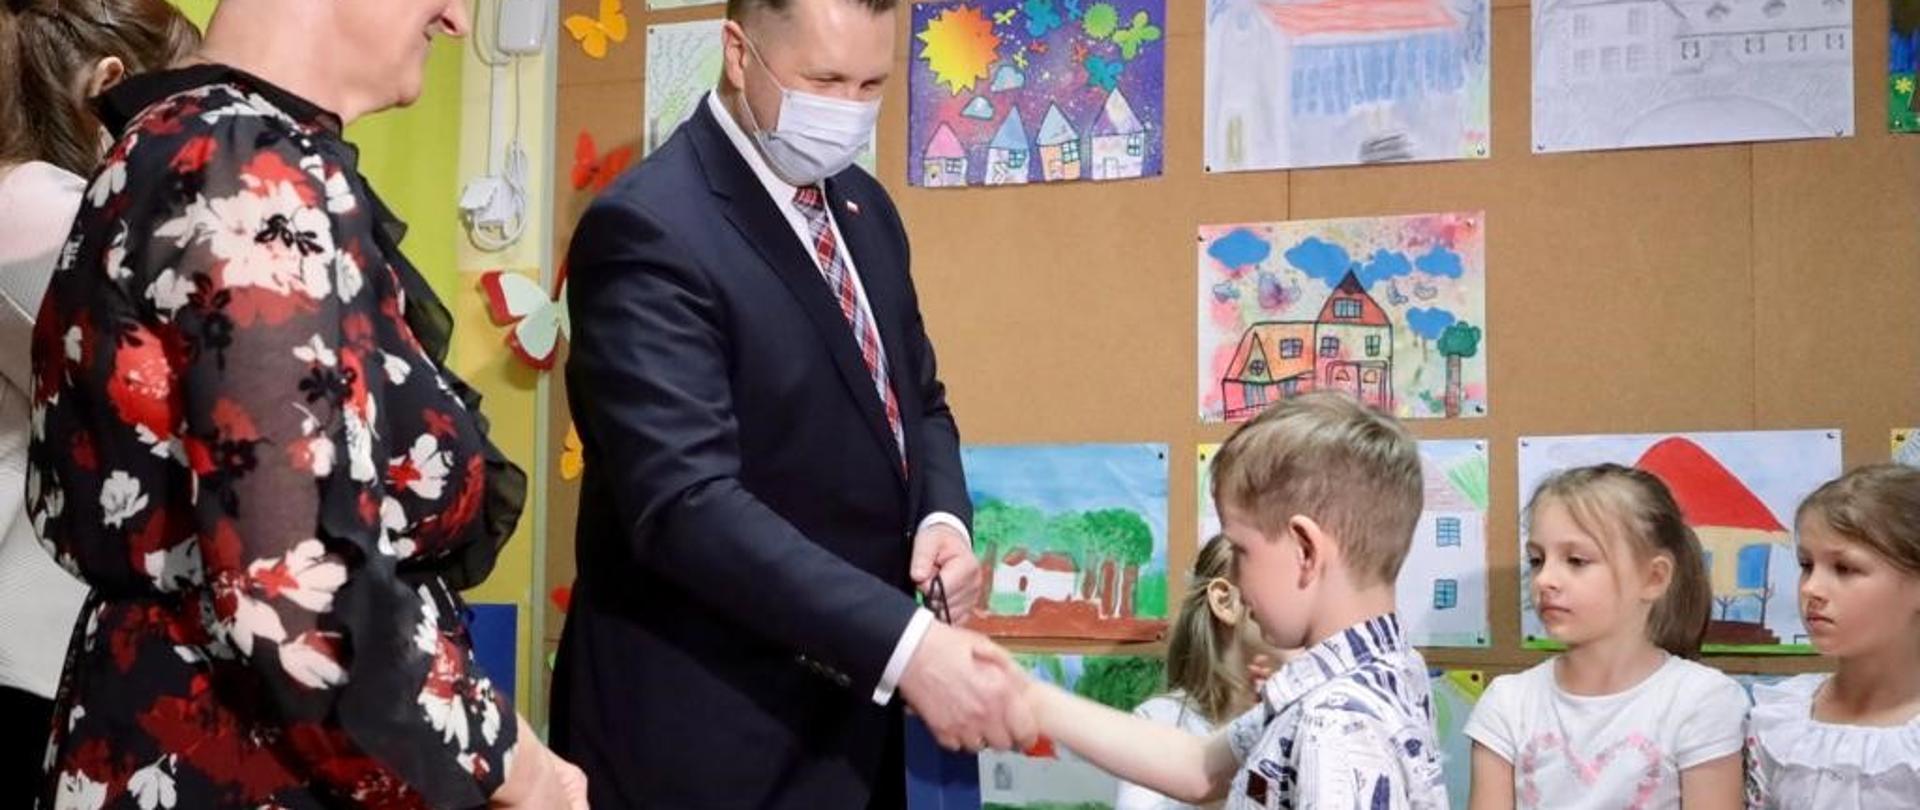 Minister Edukacji i Nauki Przemysław Czarnek w szkole wita się z dziećmi.